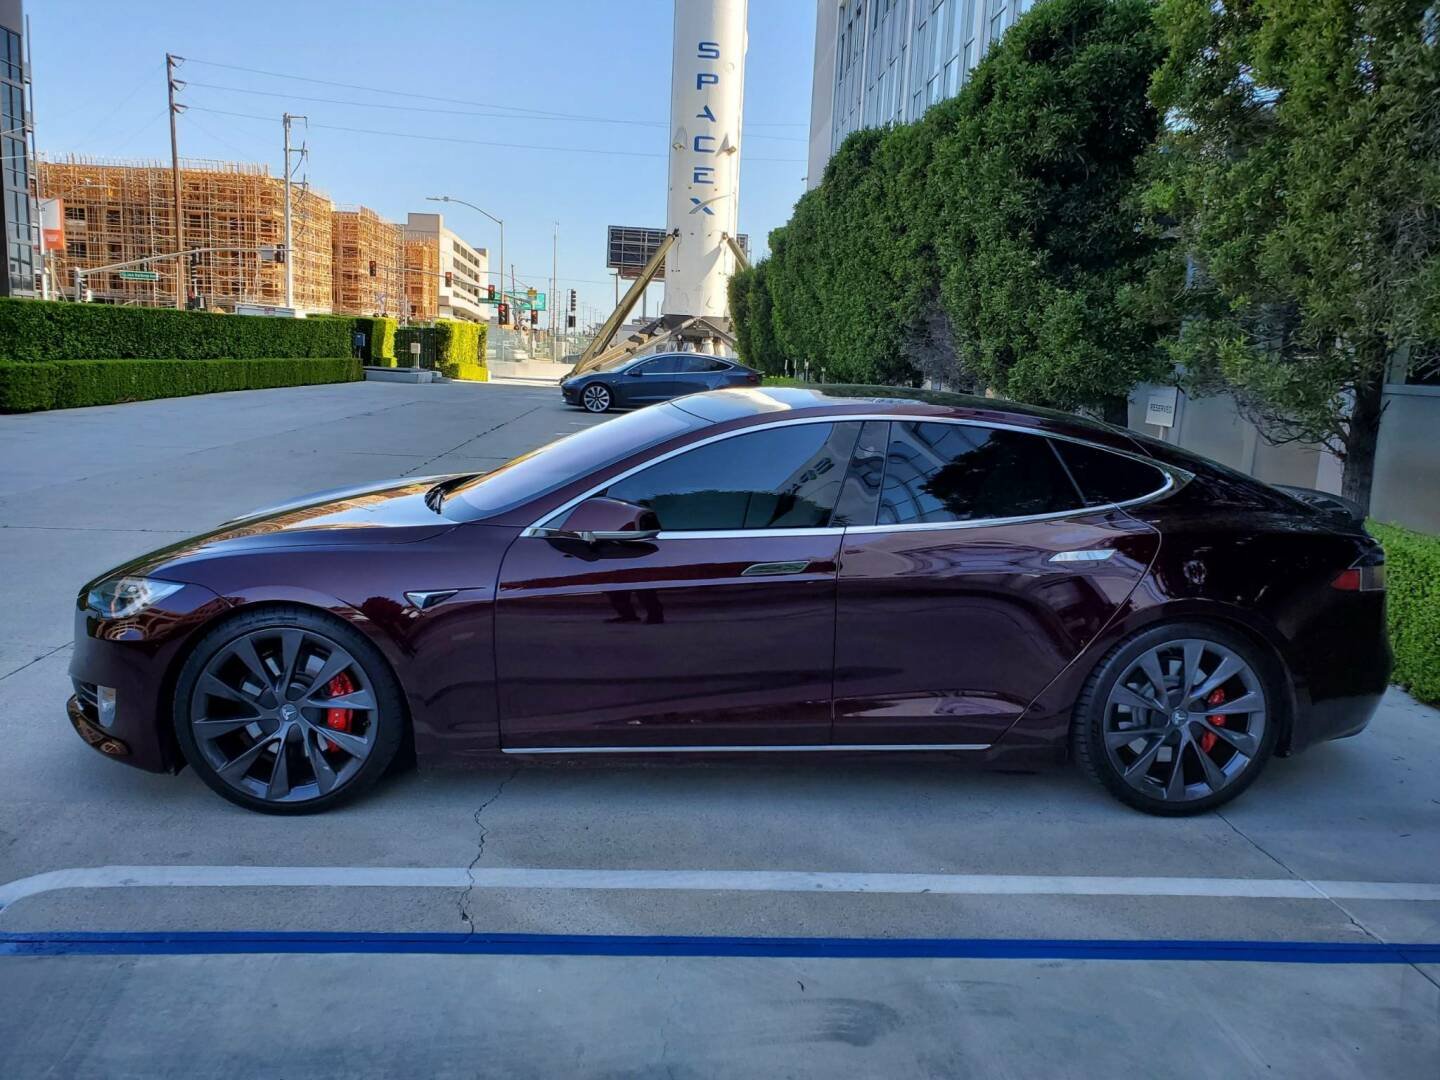 Immagine di Stufi dei soliti colori Tesla? In arrivo nuove colorazioni più accattivanti